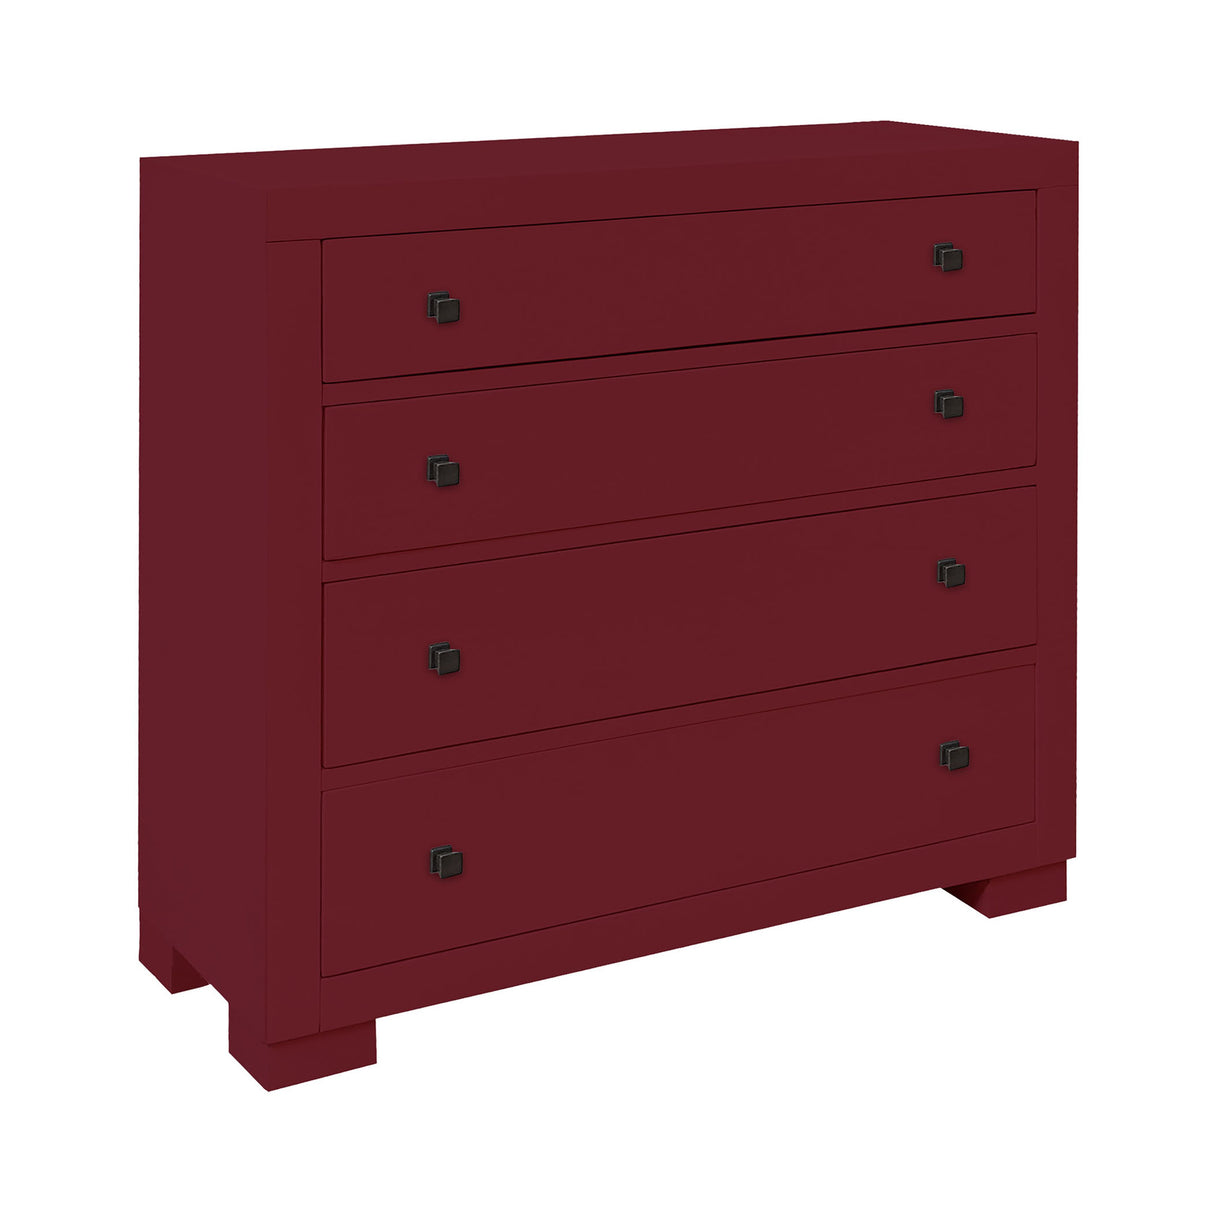 Elk 17643 Templeton 4-Drawer Cabinet - Red